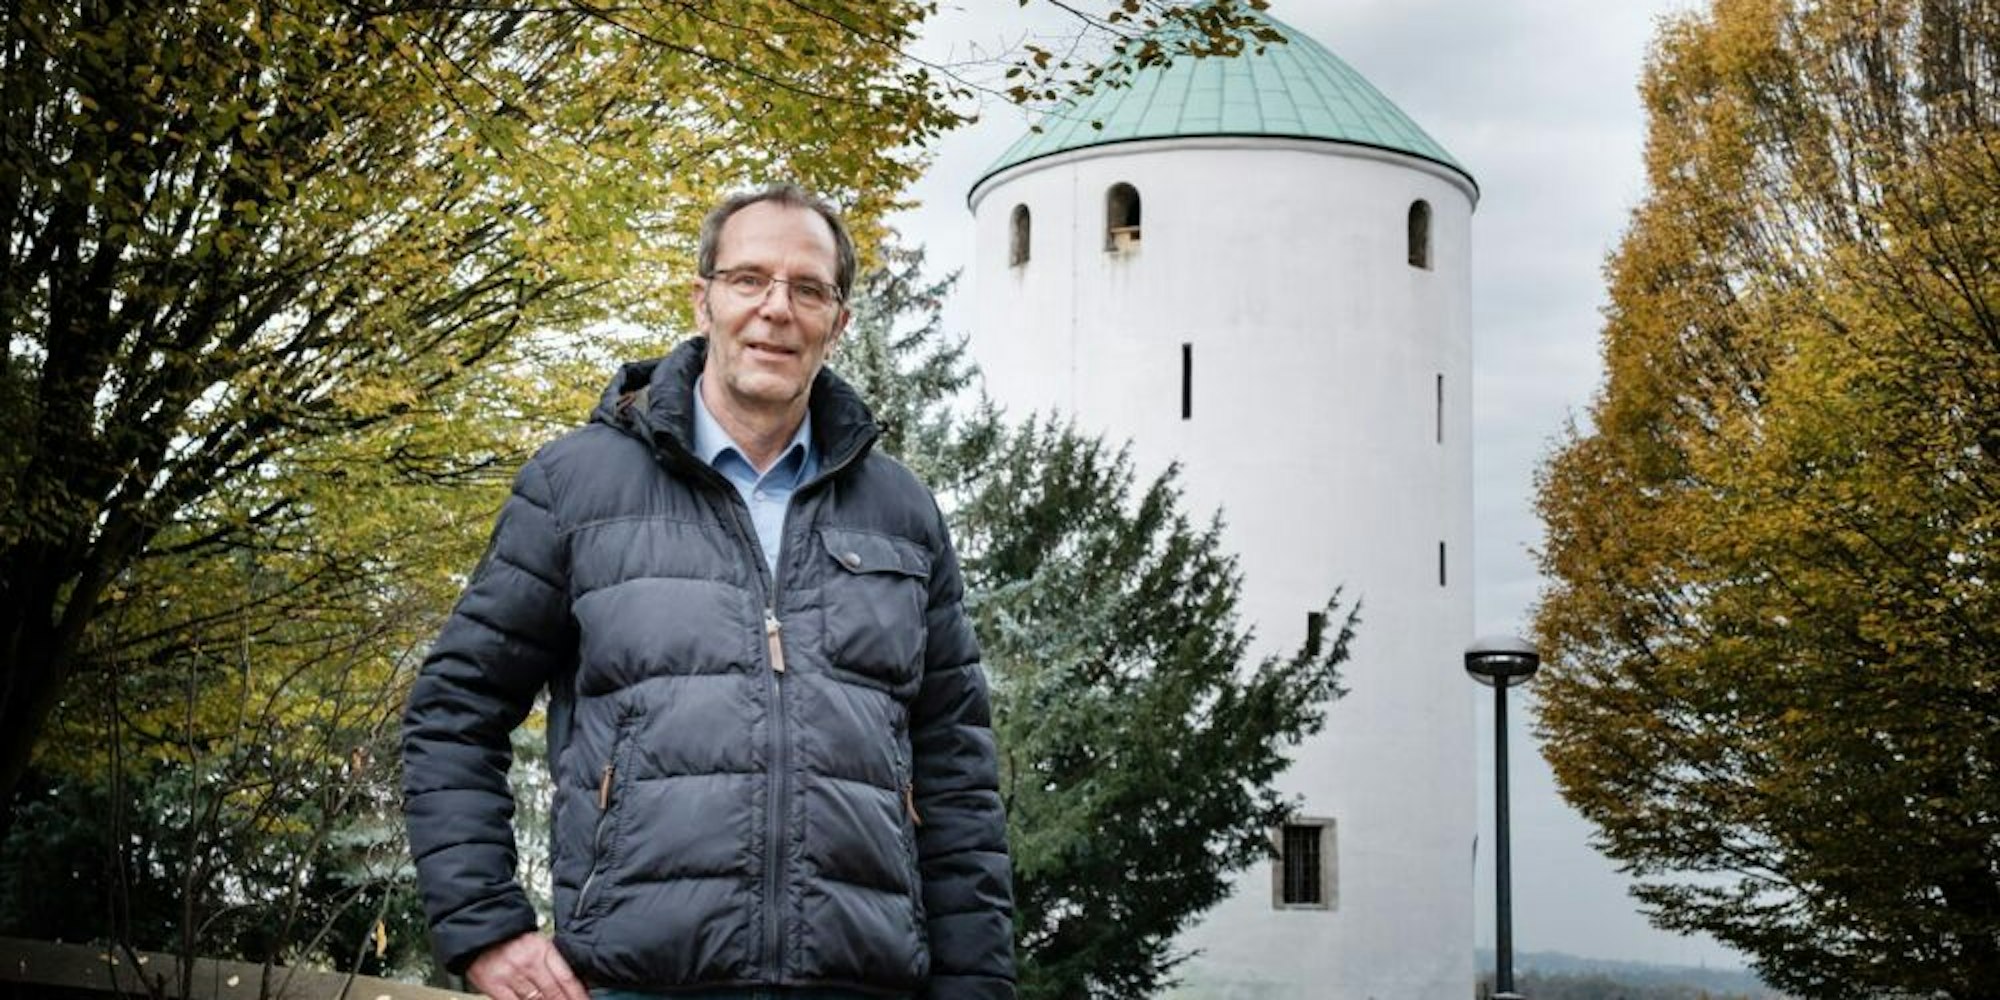 Der Hexenturm und andere Historische Attraktionen hat Walberberg zu bieten. Nun steht auch Andreas Schlösser für den Ort.